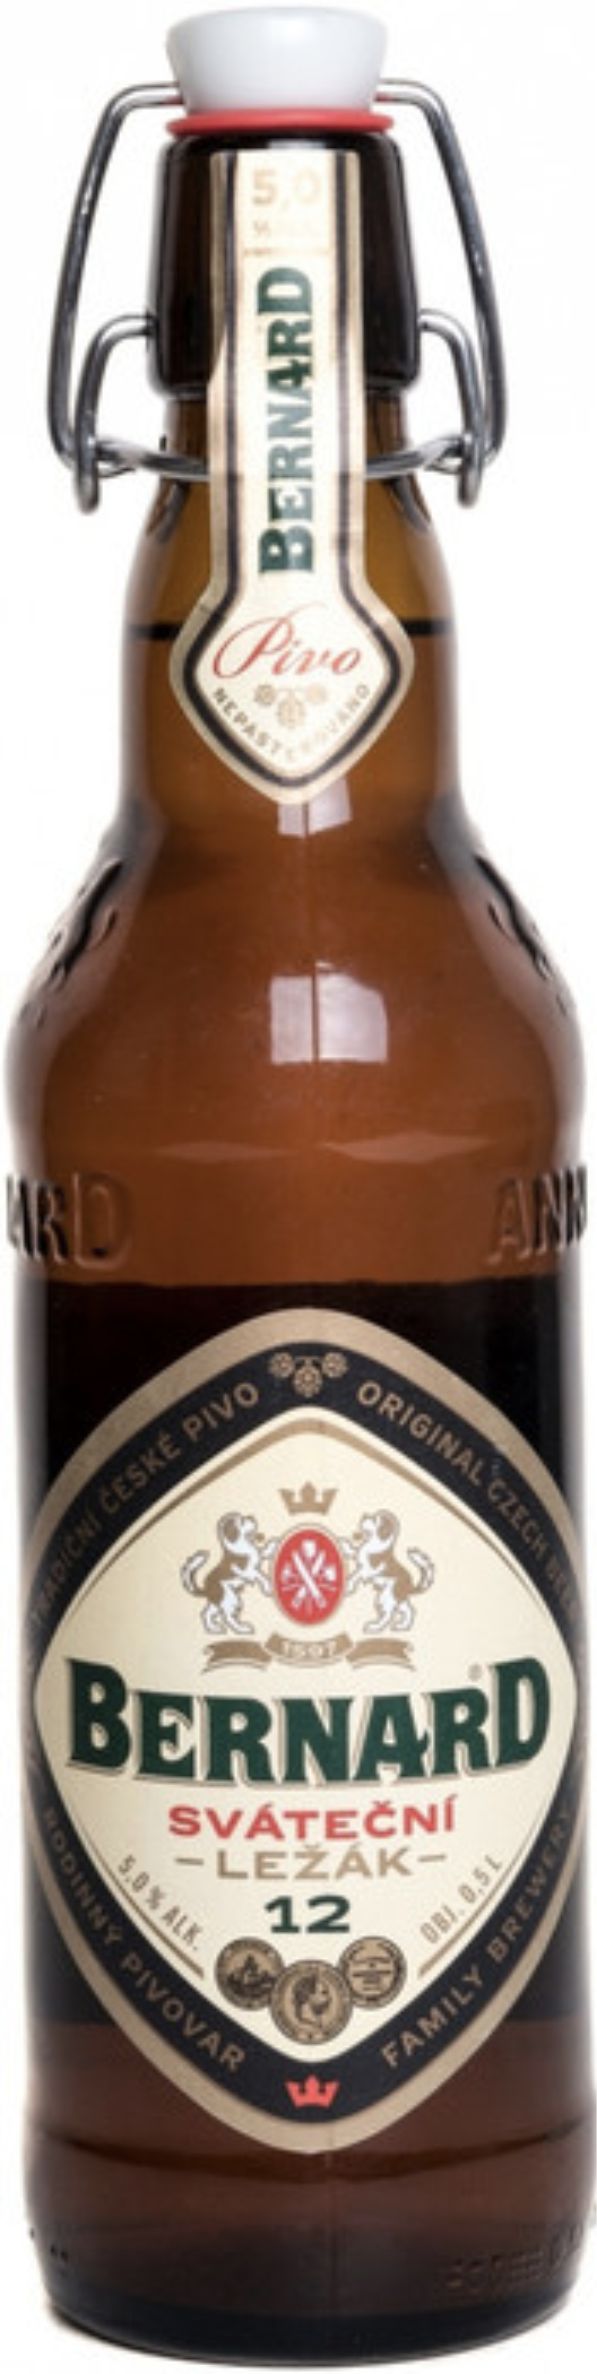 Пиво Бернард Сватечни Лежак, светлое, 0.5 л